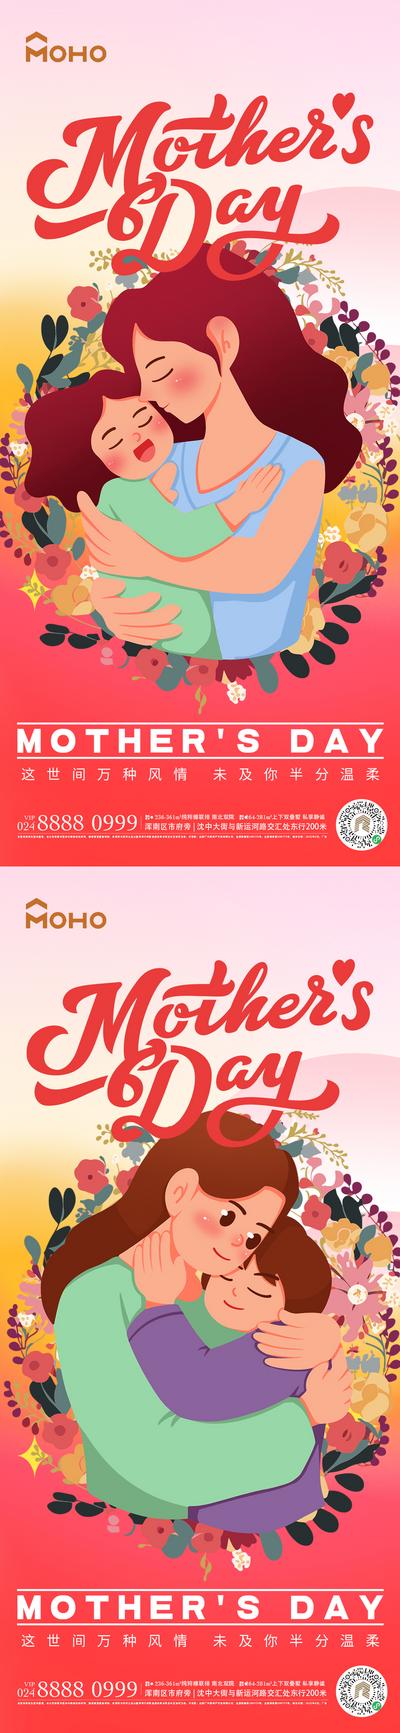 【南门网】广告 海报 节日 母亲节 母亲 母女 母子 爱 母爱 感恩 拥抱 呵护 陪伴 鲜花 送花